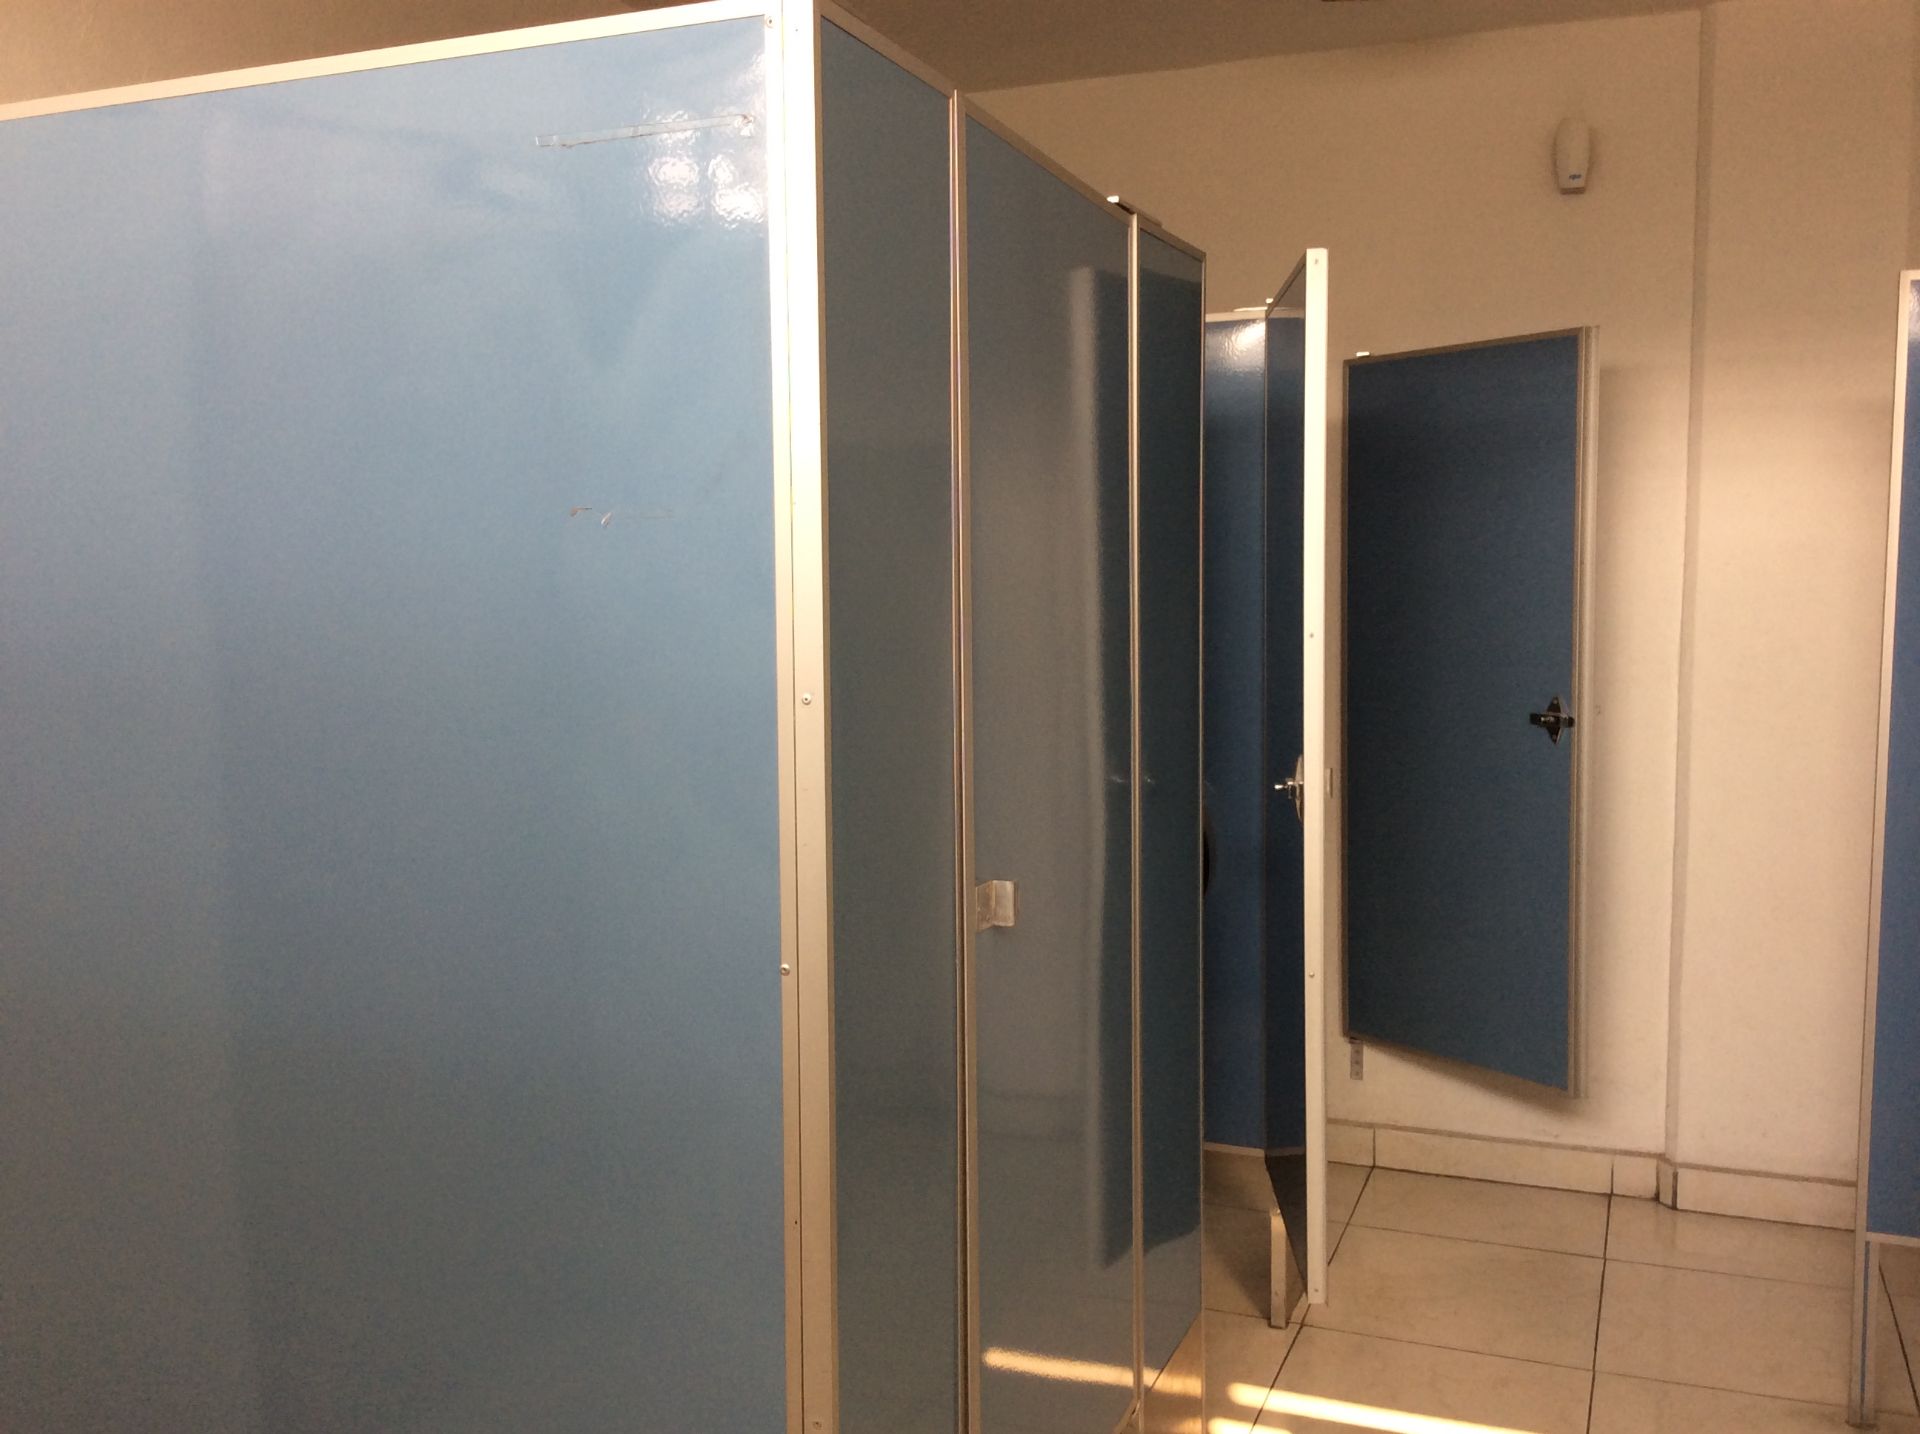 Baño de hombres oficinas planta baja, 3 WC - Image 6 of 12